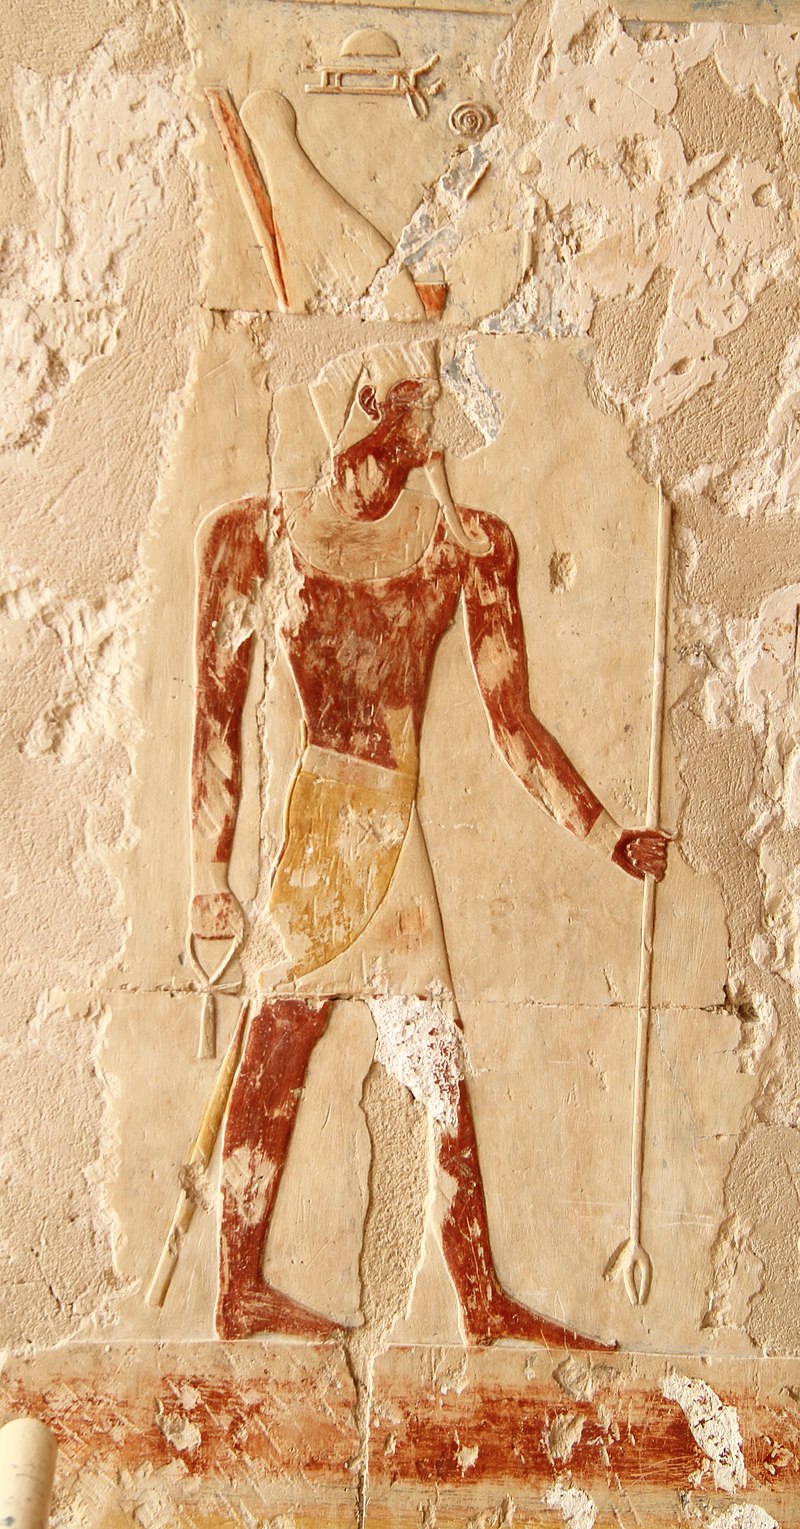 Relieve proveniente del complejo de Luxor que representa a Atum con la doble corona del Alto y Bajo Egipto.